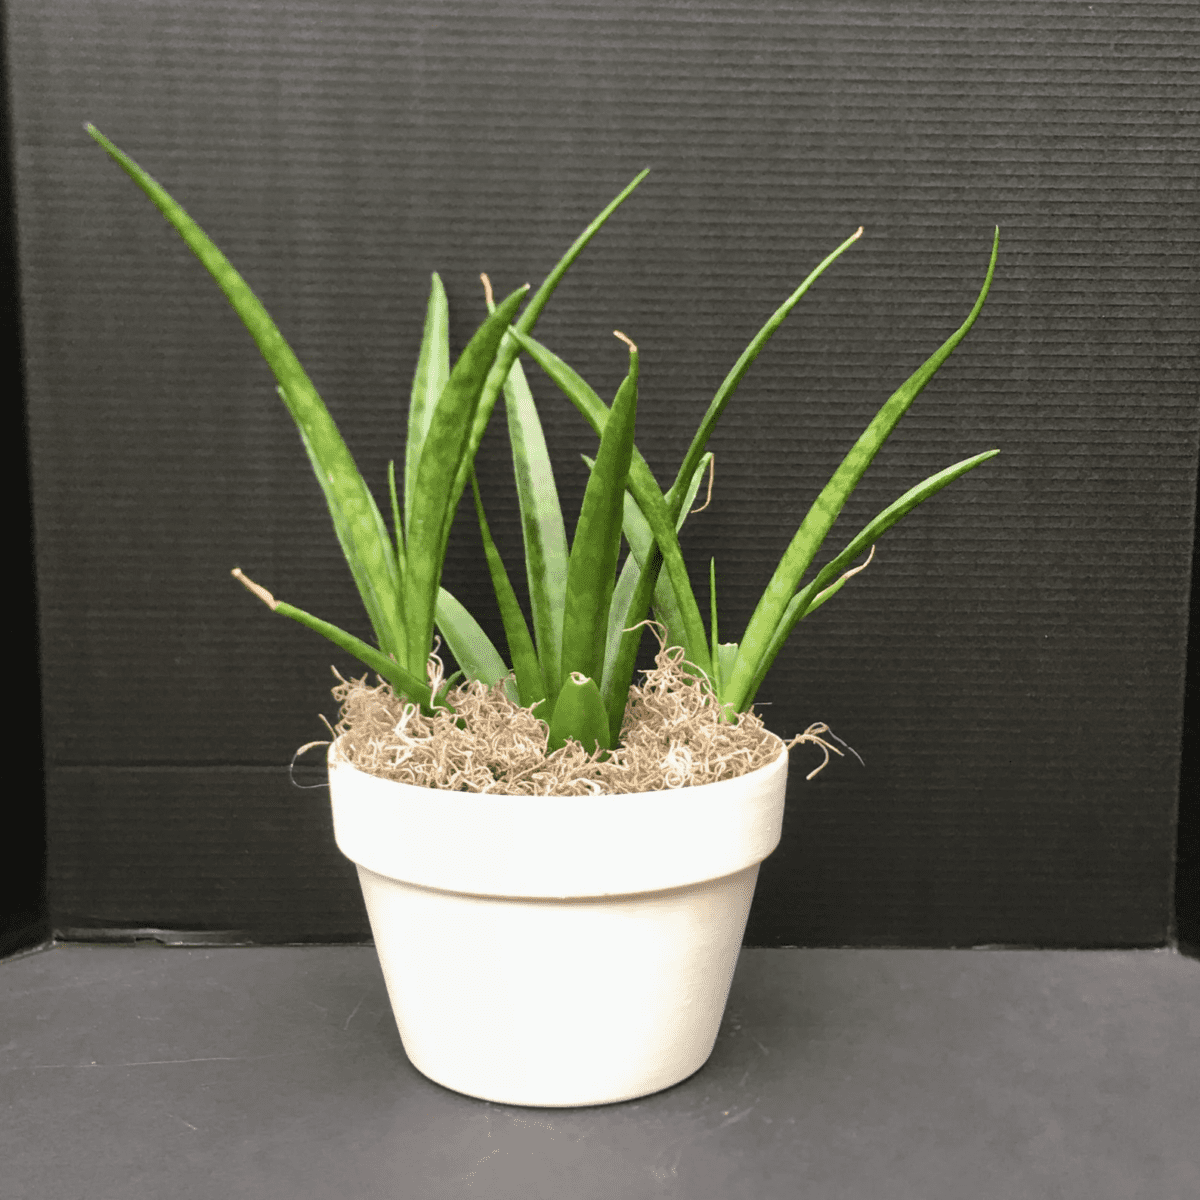 Sansevieria Parva “Kenya Hyacinth”